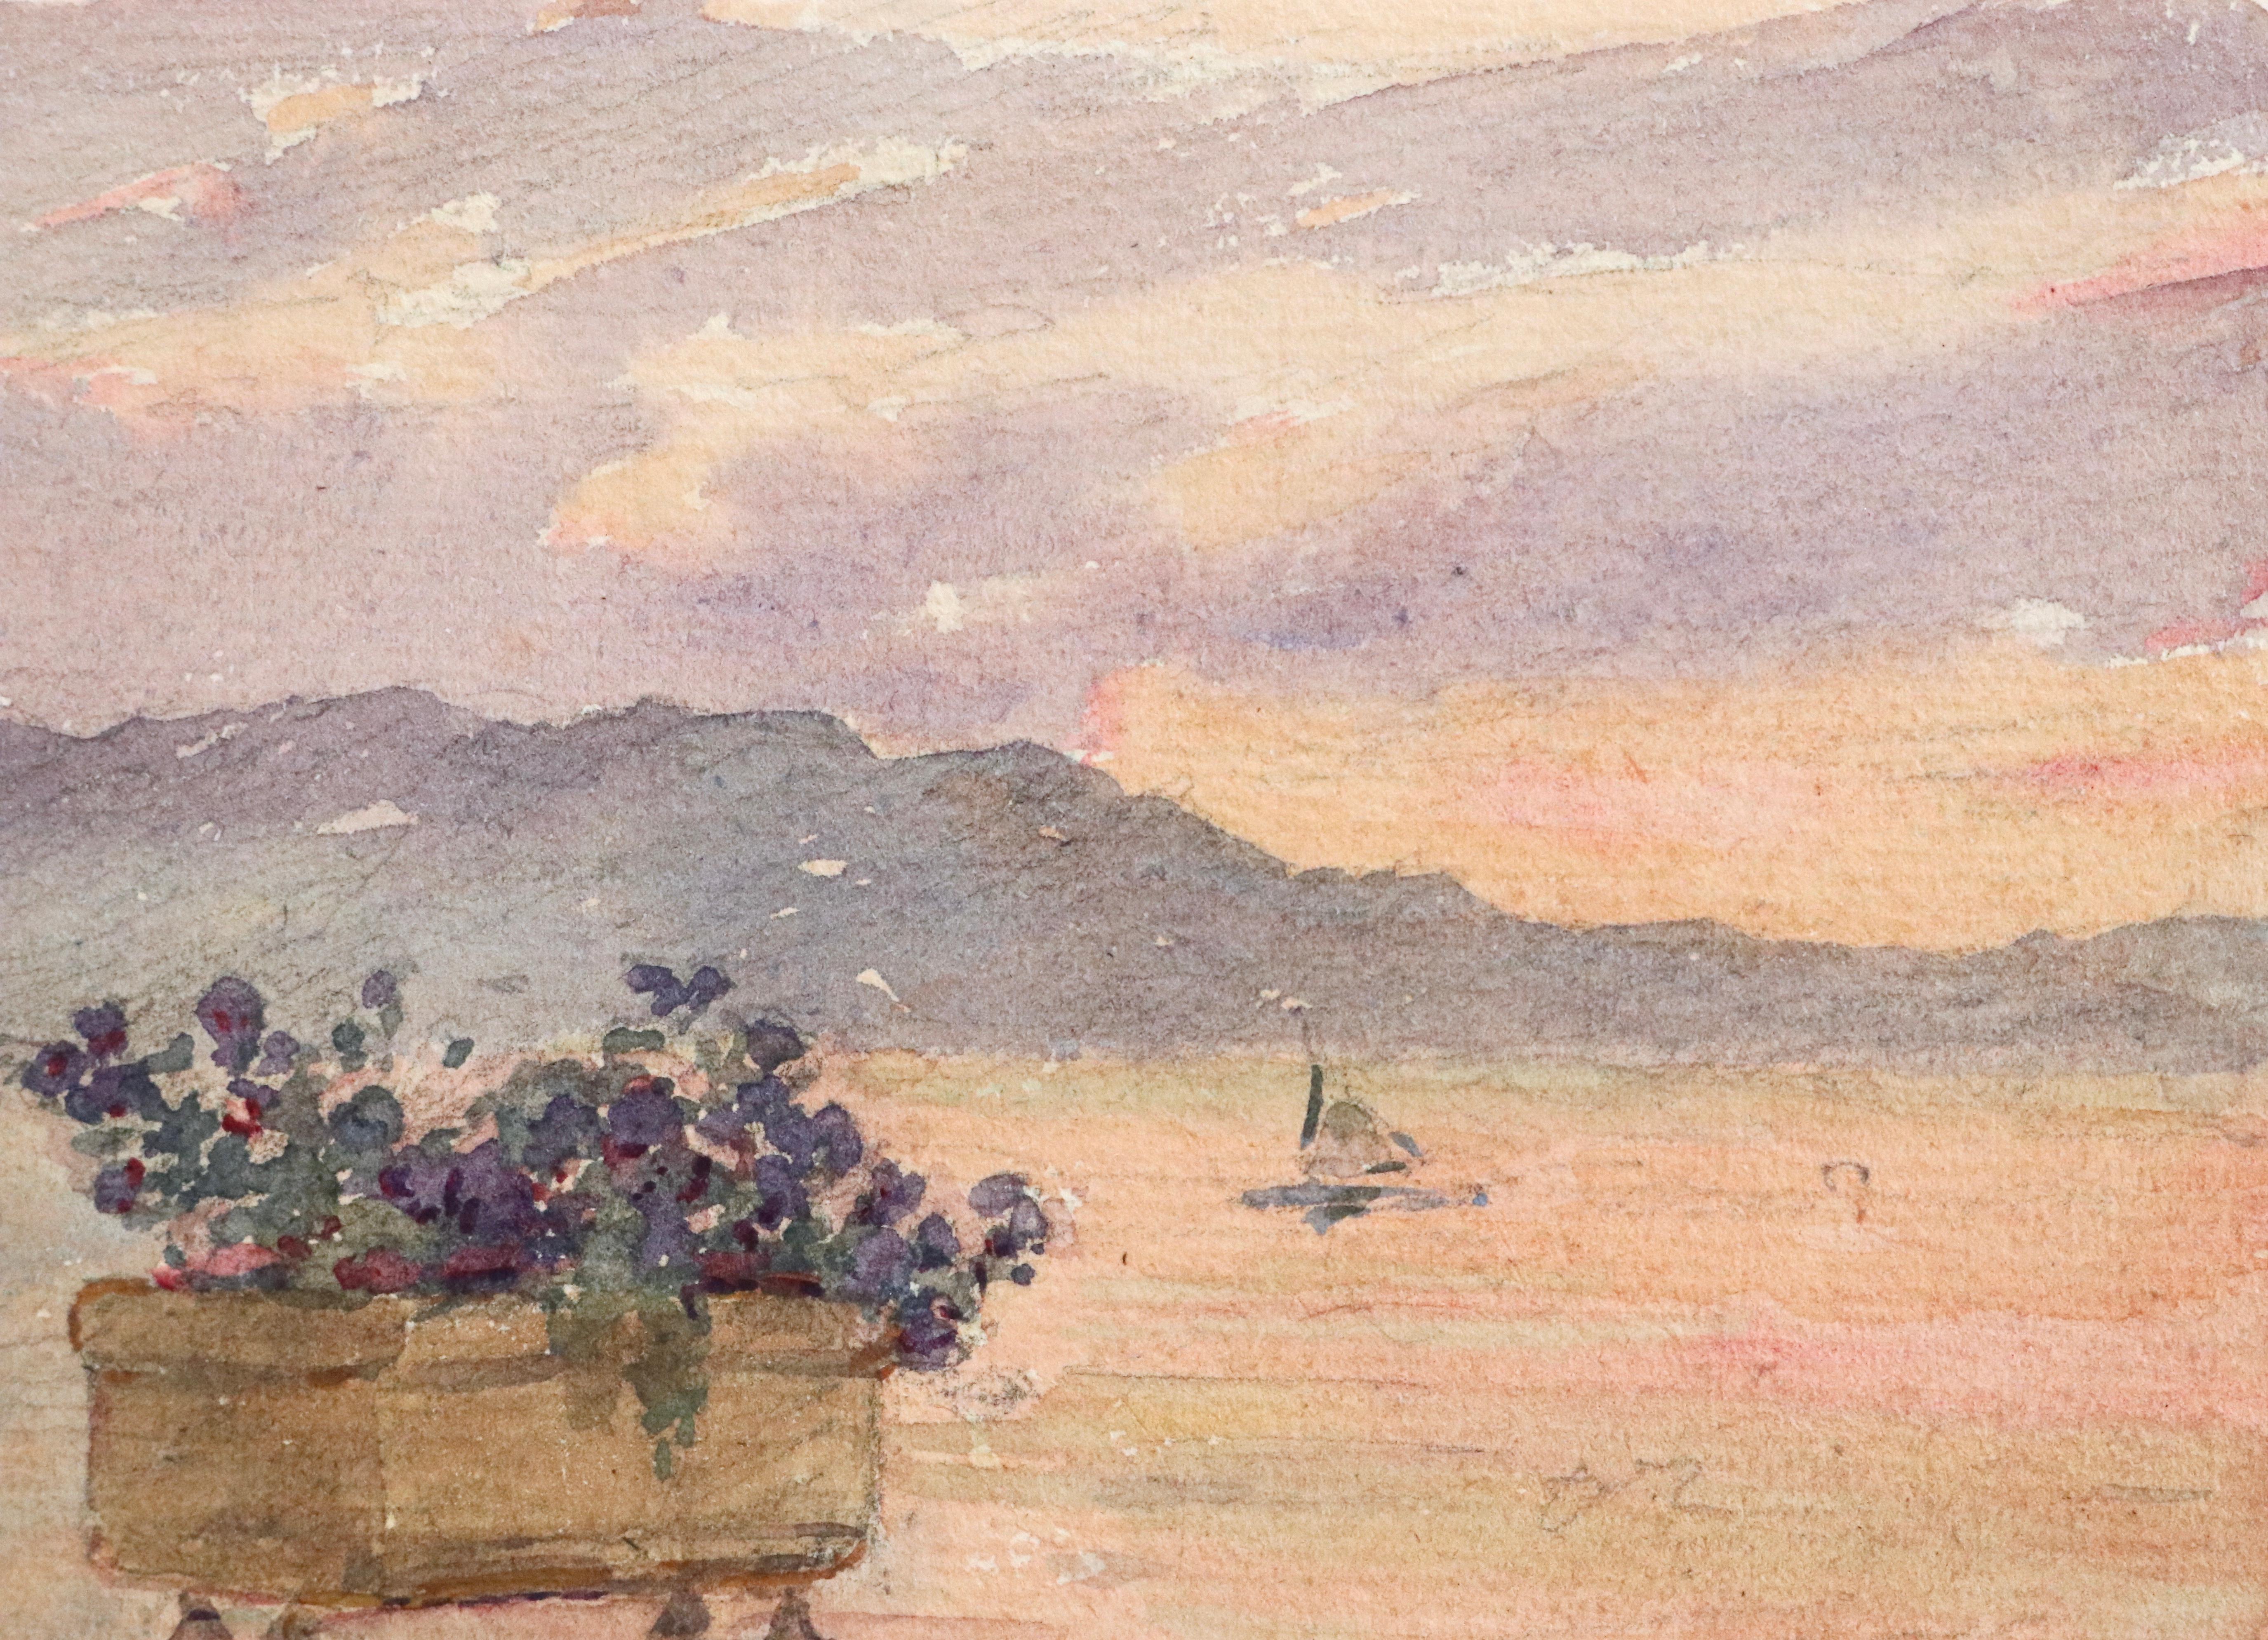 Aquarelle sur papier réalisée vers 1925 par Henri Duhem représentant une vue de la mer depuis la promenade de Juan les Pins sur la Côte d'Azur. Une jardinière de fleurs violettes au premier plan et un bateau naviguant sur l'eau qui est rose à cause